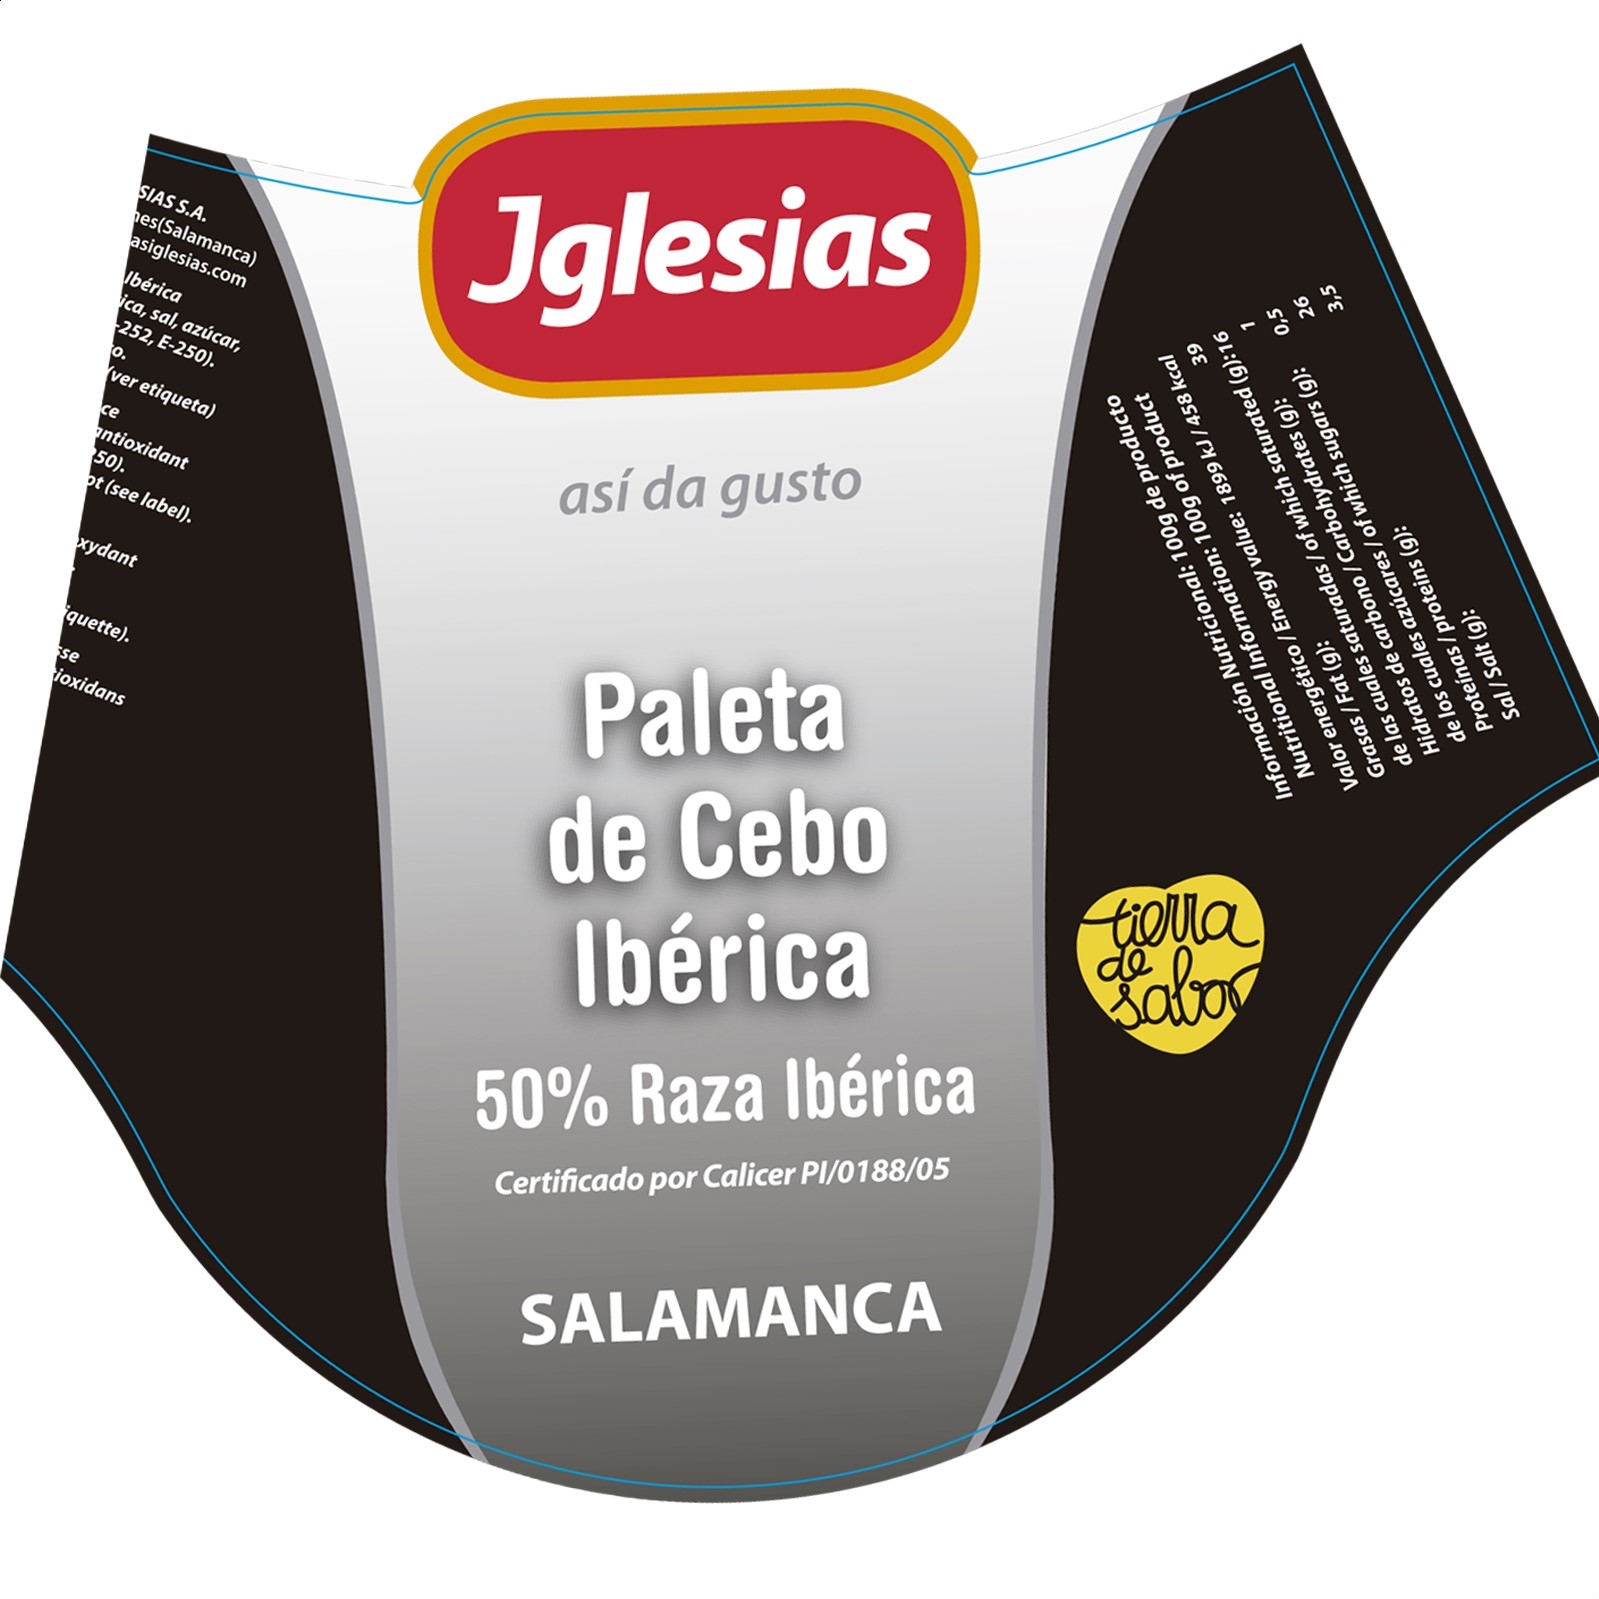 Iglesias - Paleta de cebo Ibérica 50% raza ibérica con pata de 5 a 5,5Kg